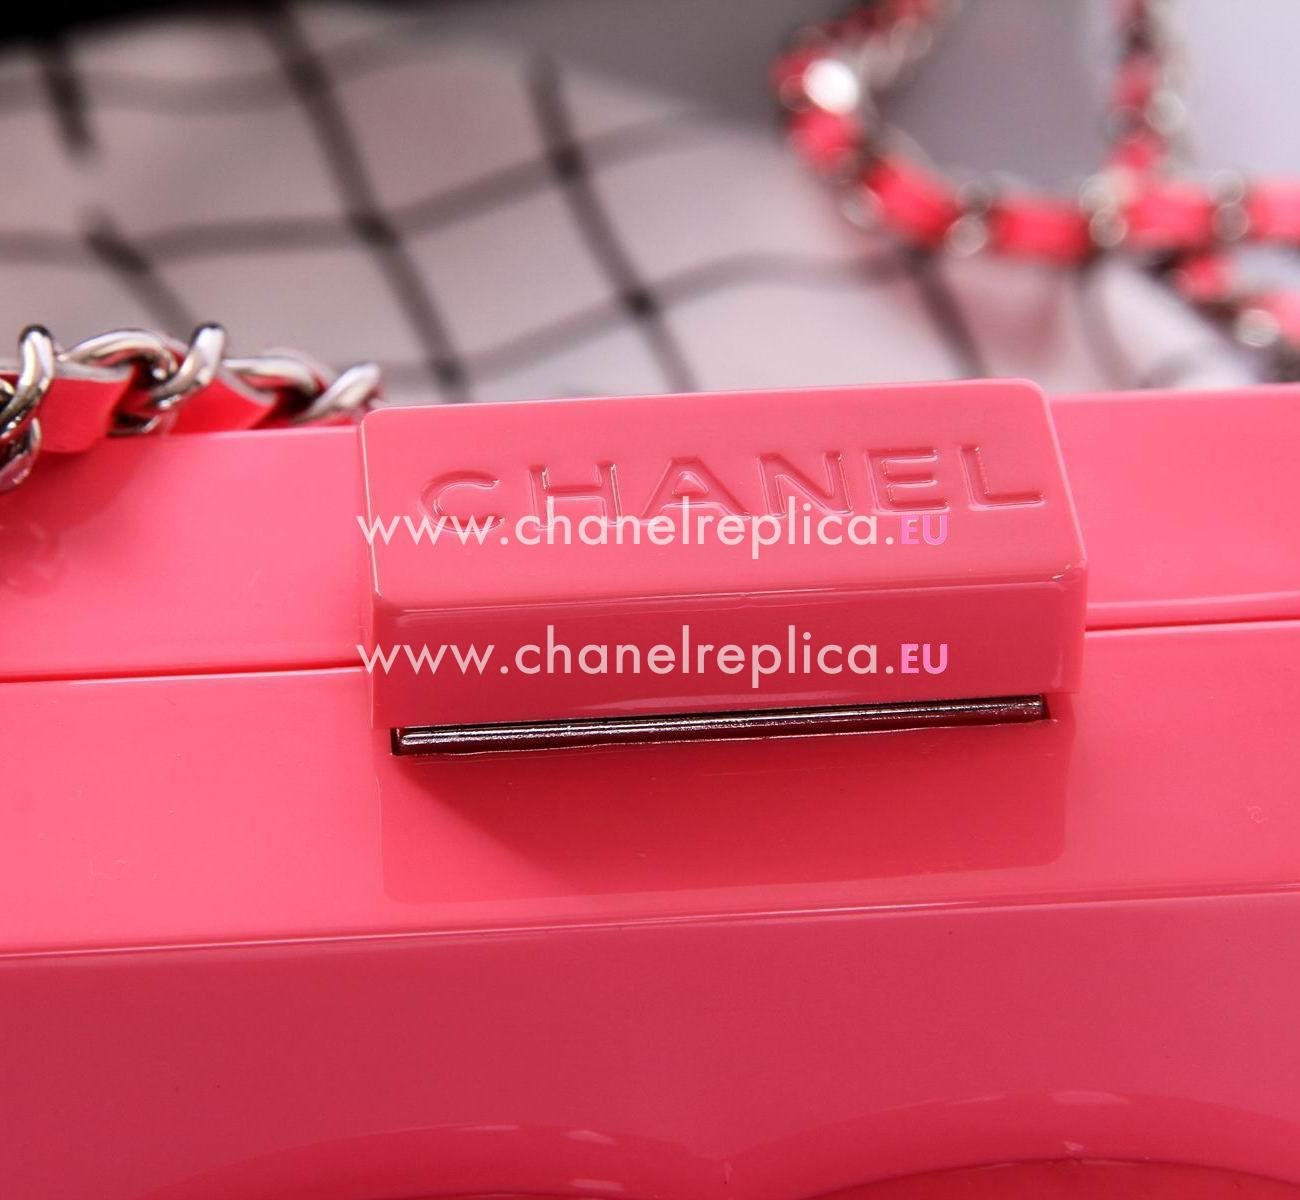 Chanel Pretty Lego Clutch Bag Hot Pink A5680B9